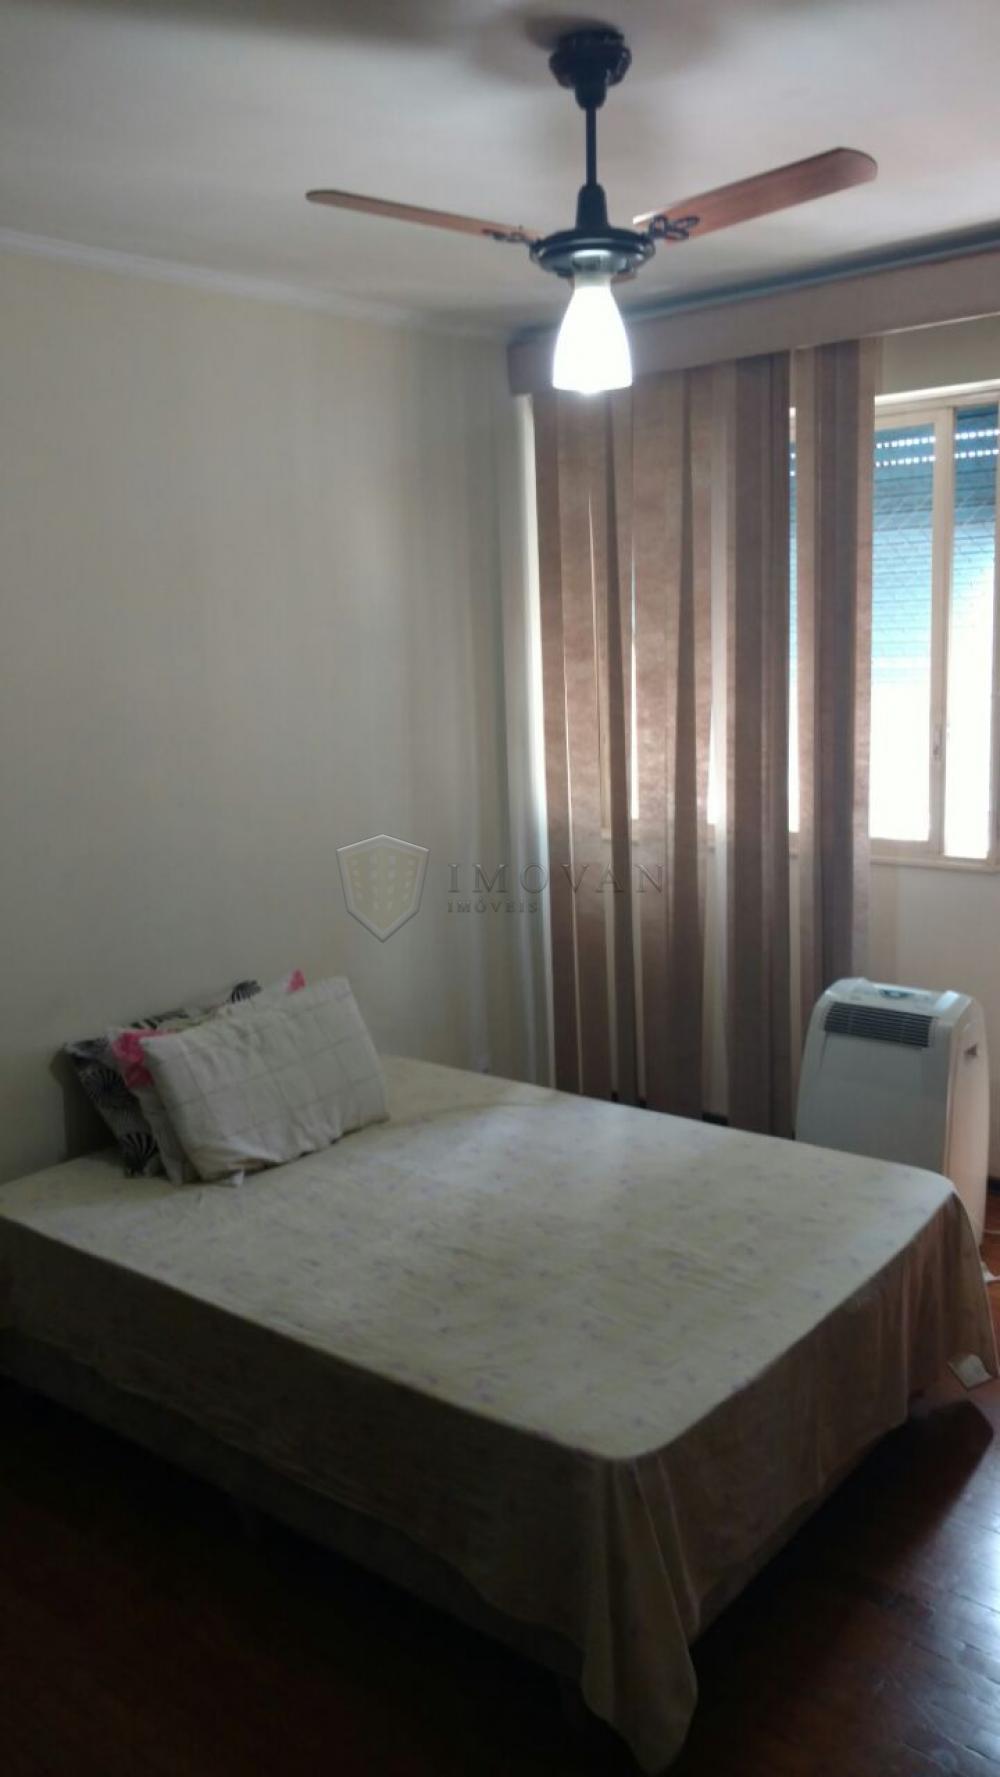 Comprar Apartamento / Padrão em Ribeirão Preto R$ 450.000,00 - Foto 17